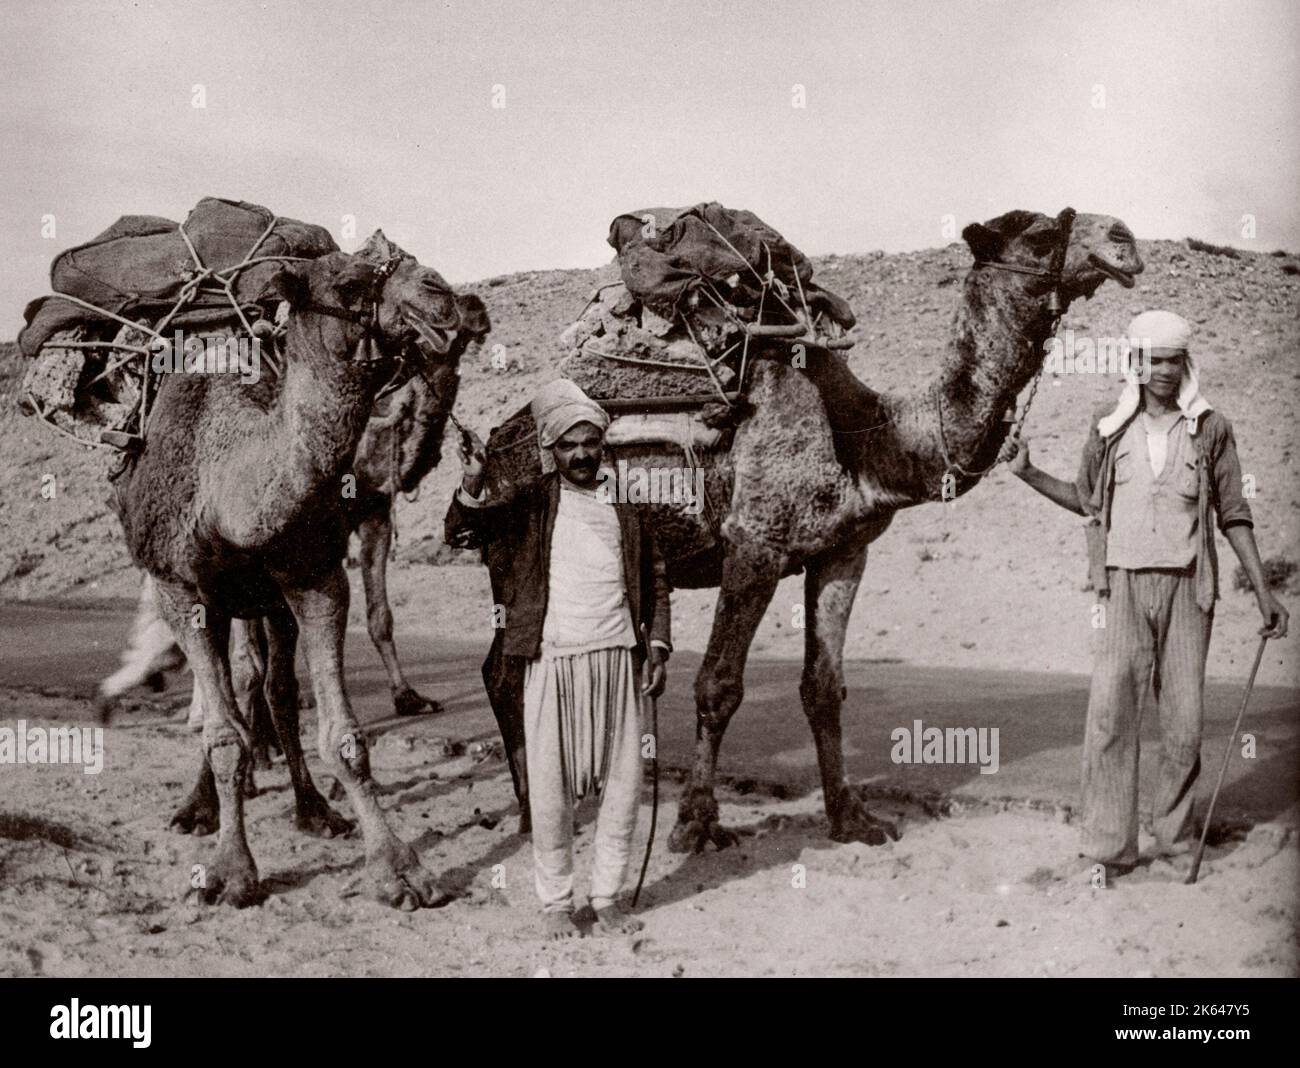 1943 - chameaux en Syrie Photographie d'un officier de recrutement de l'armée britannique en poste en Afrique de l'est et au Moyen-Orient pendant la Seconde Guerre mondiale Banque D'Images